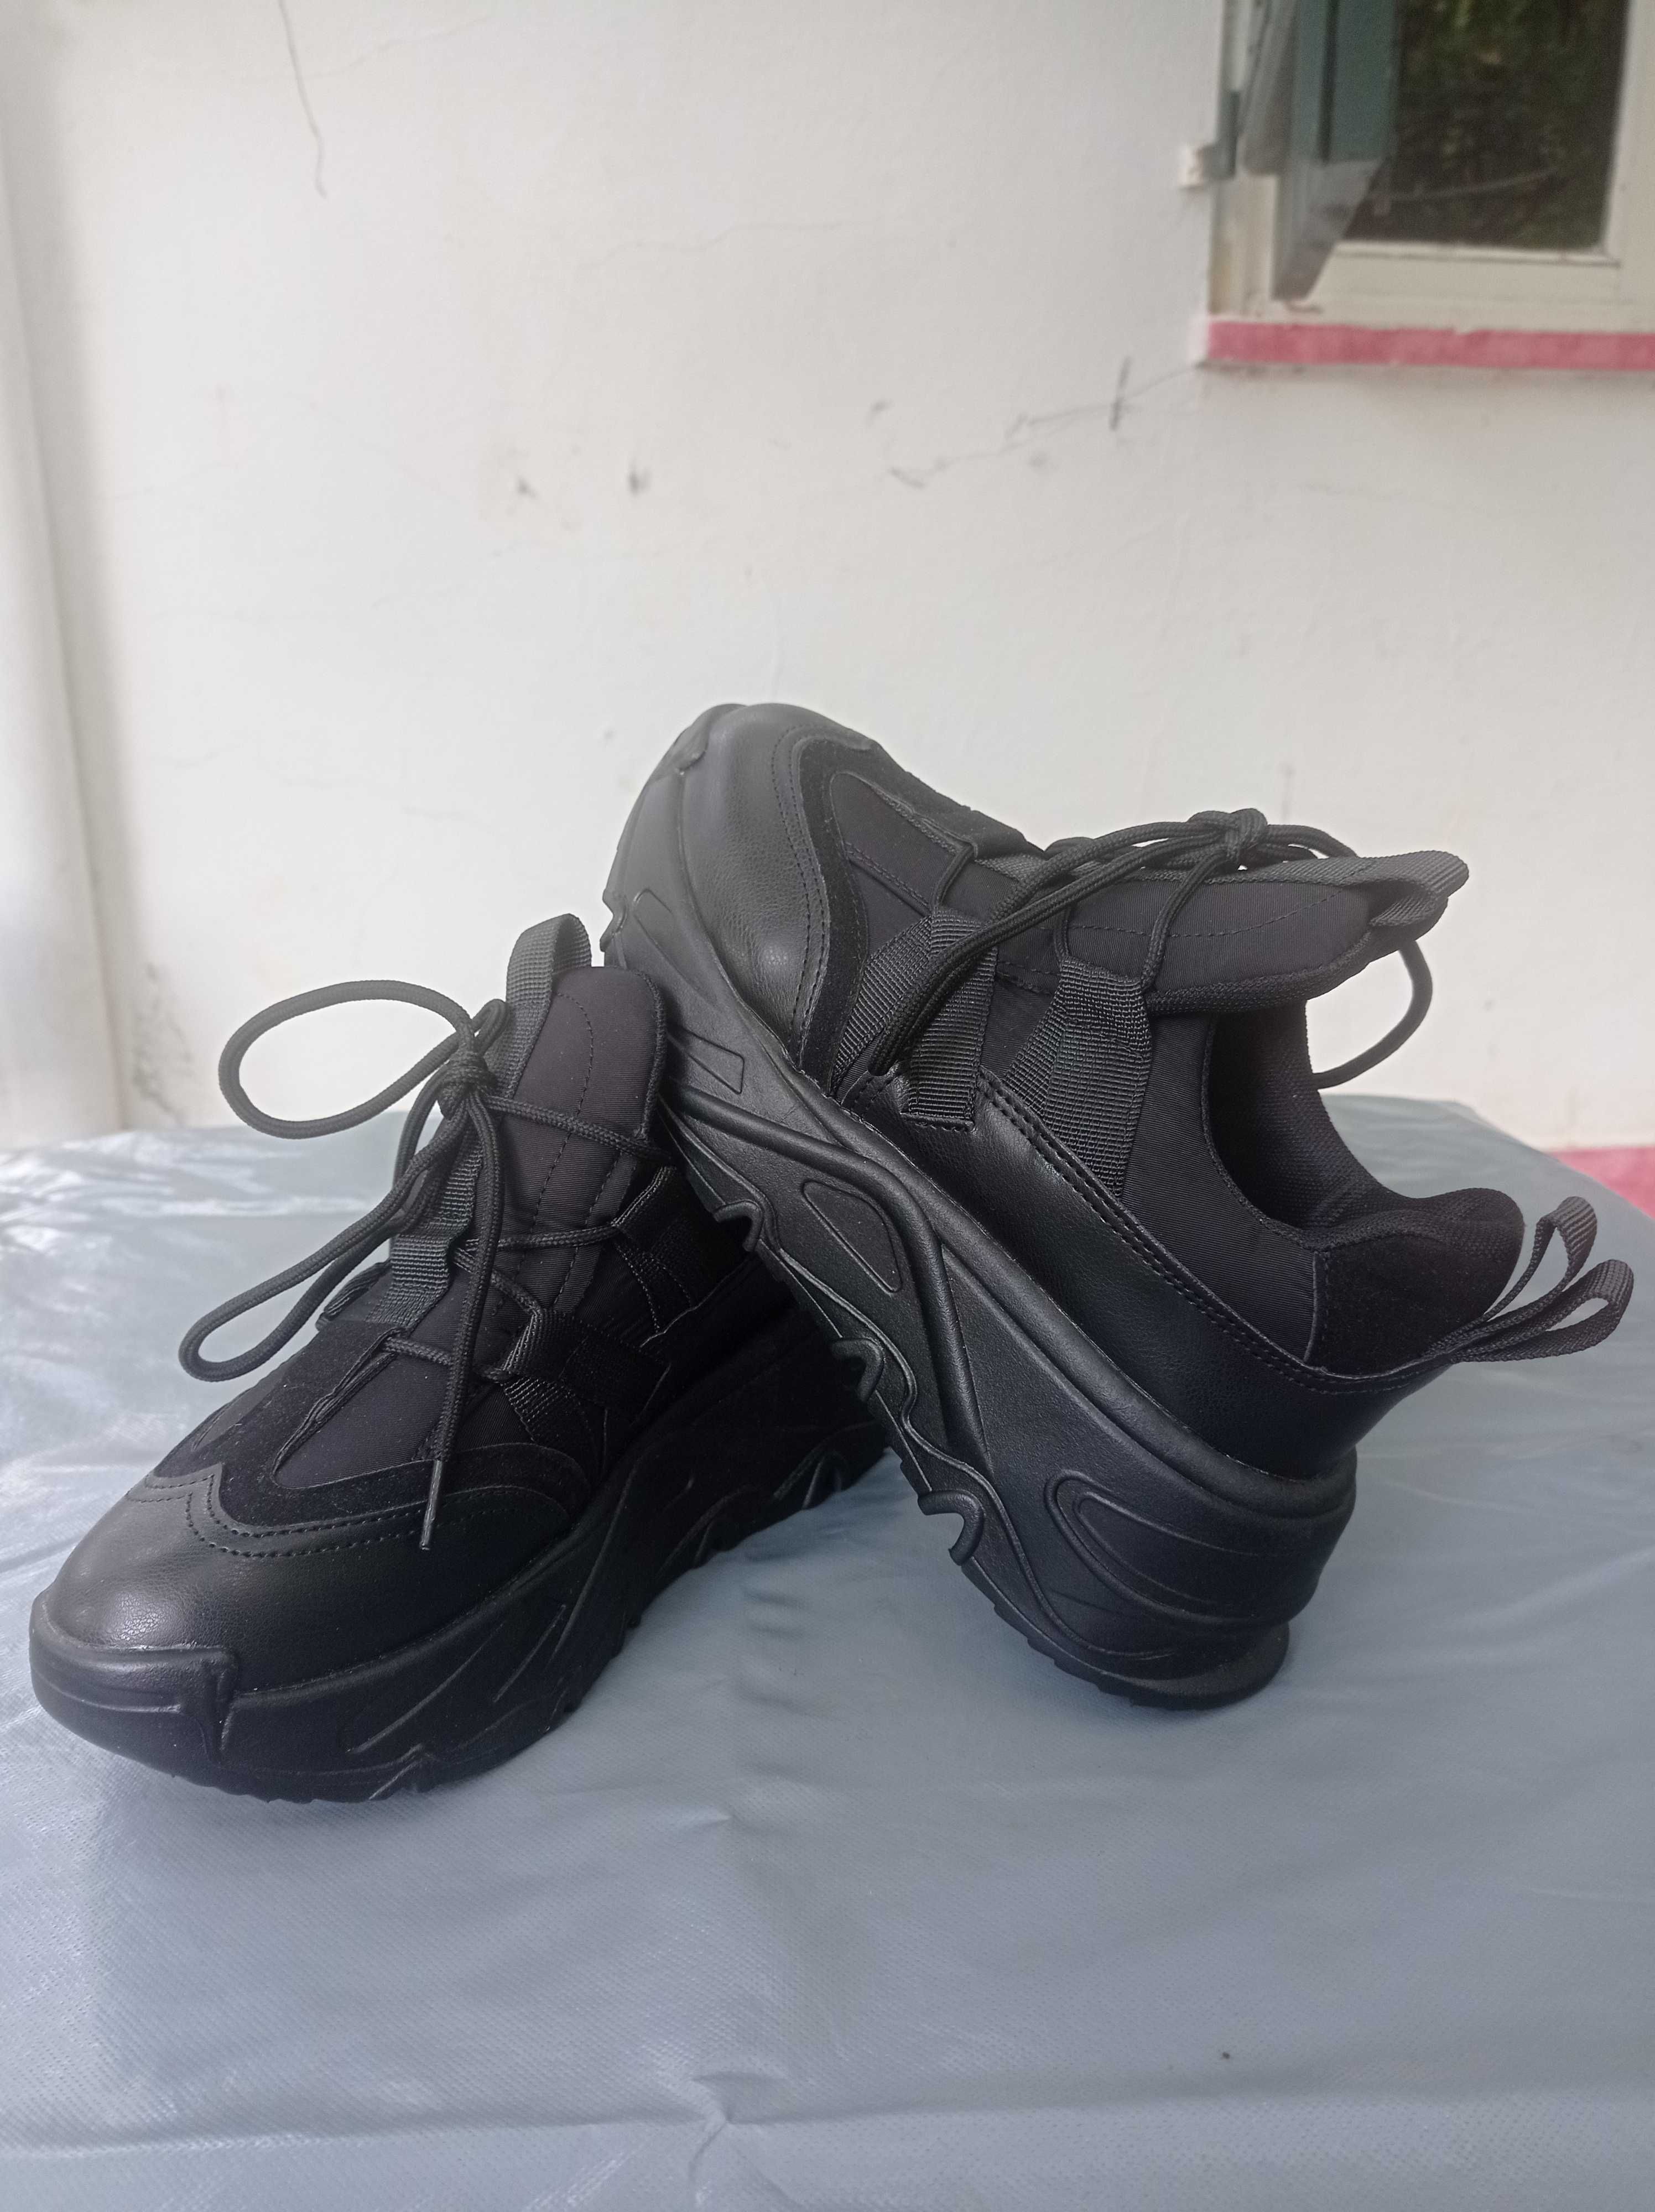 Ténis chunky pretos 36 / Chunky black shoes 36